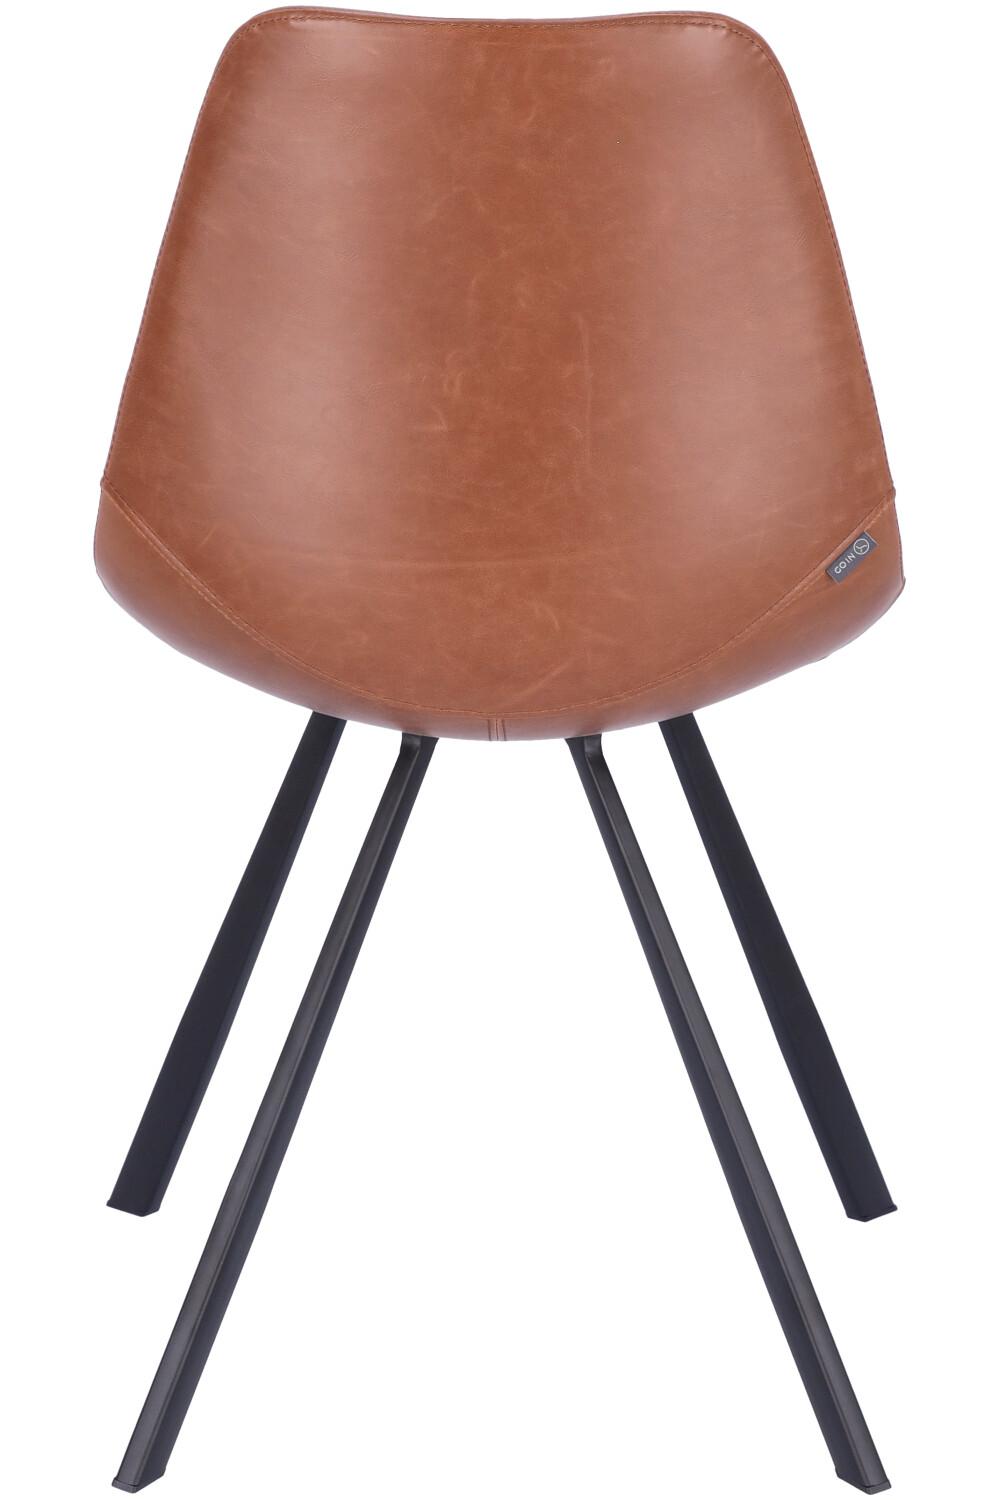 Abbildung chair Tembo Rückansicht